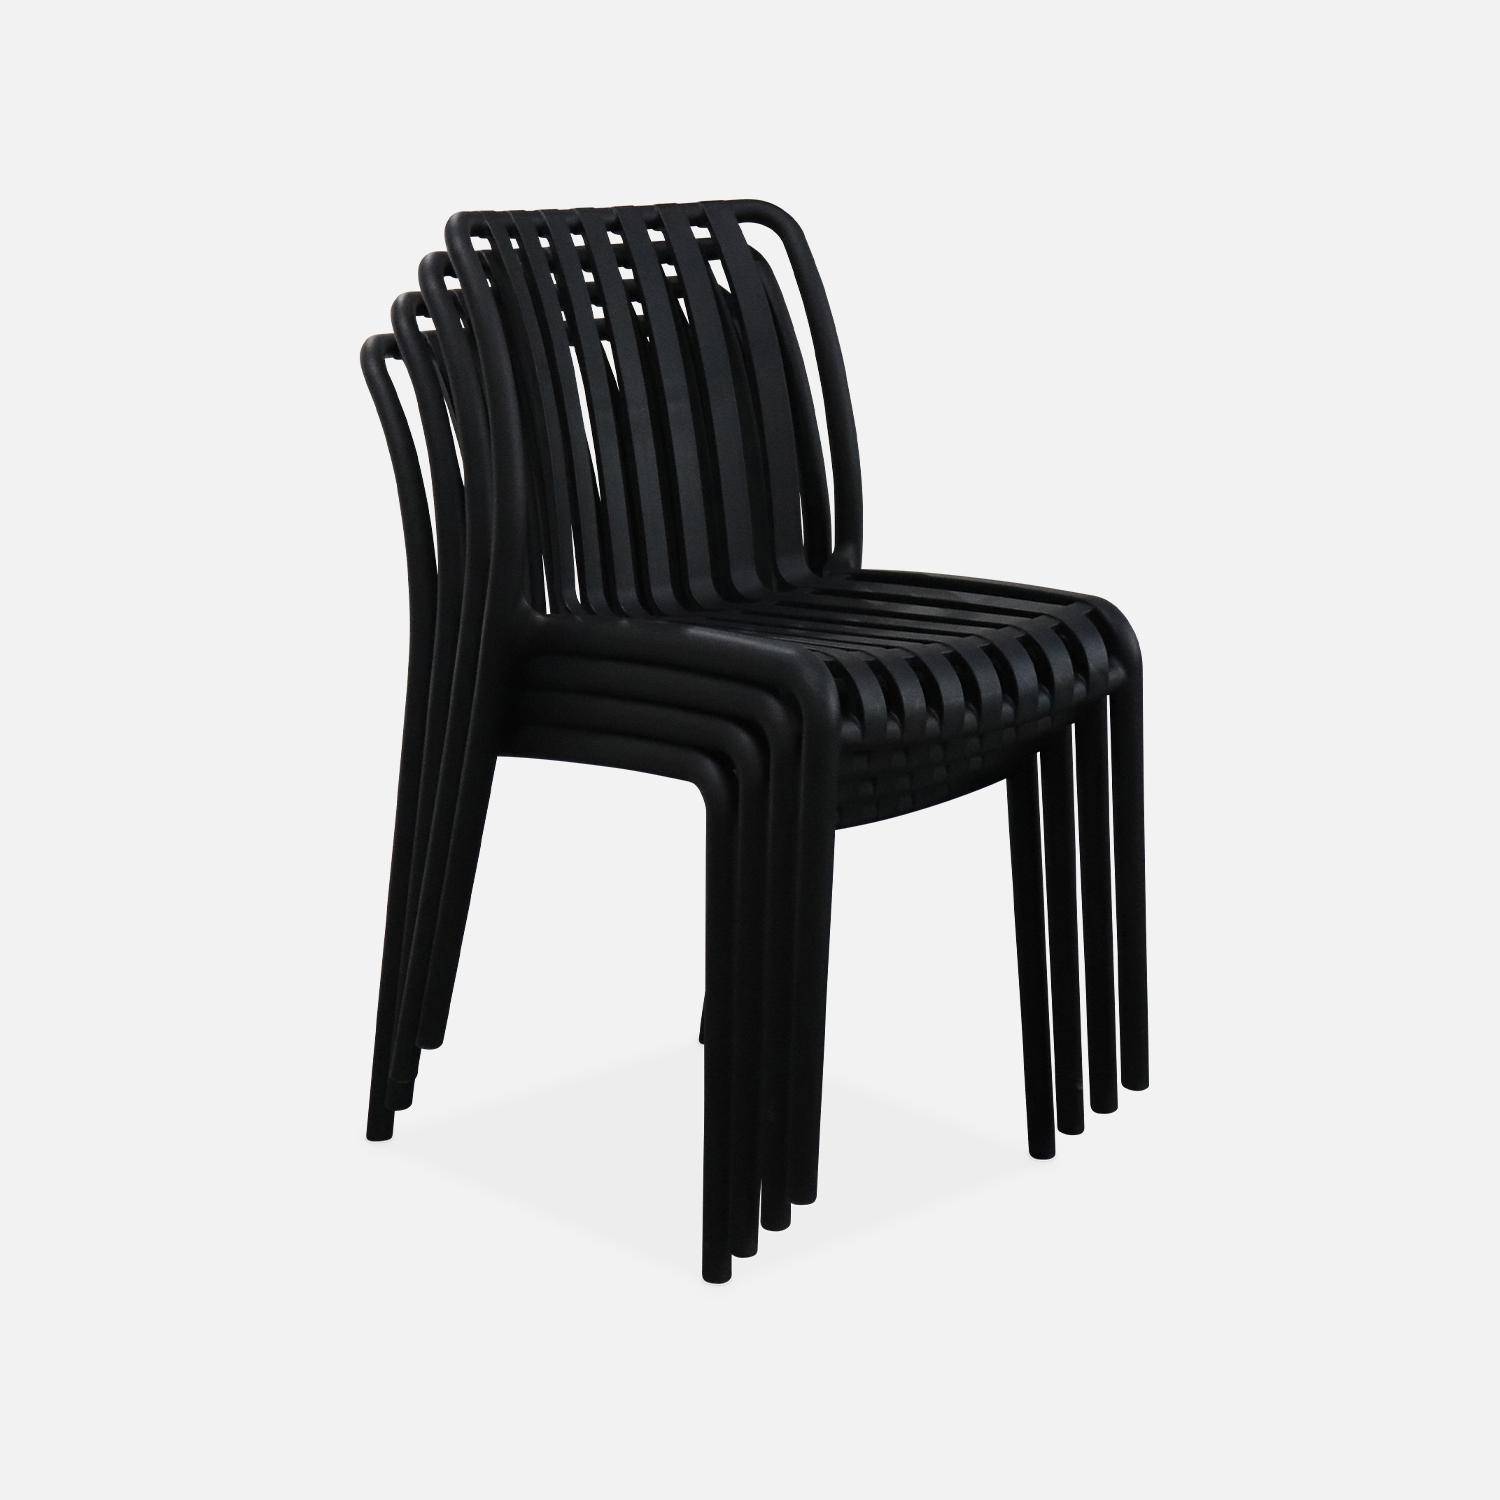 4er Set Gartenstühle aus schwarzem Kunststoff, stapelbar, bereits montiert - Agathe Photo3